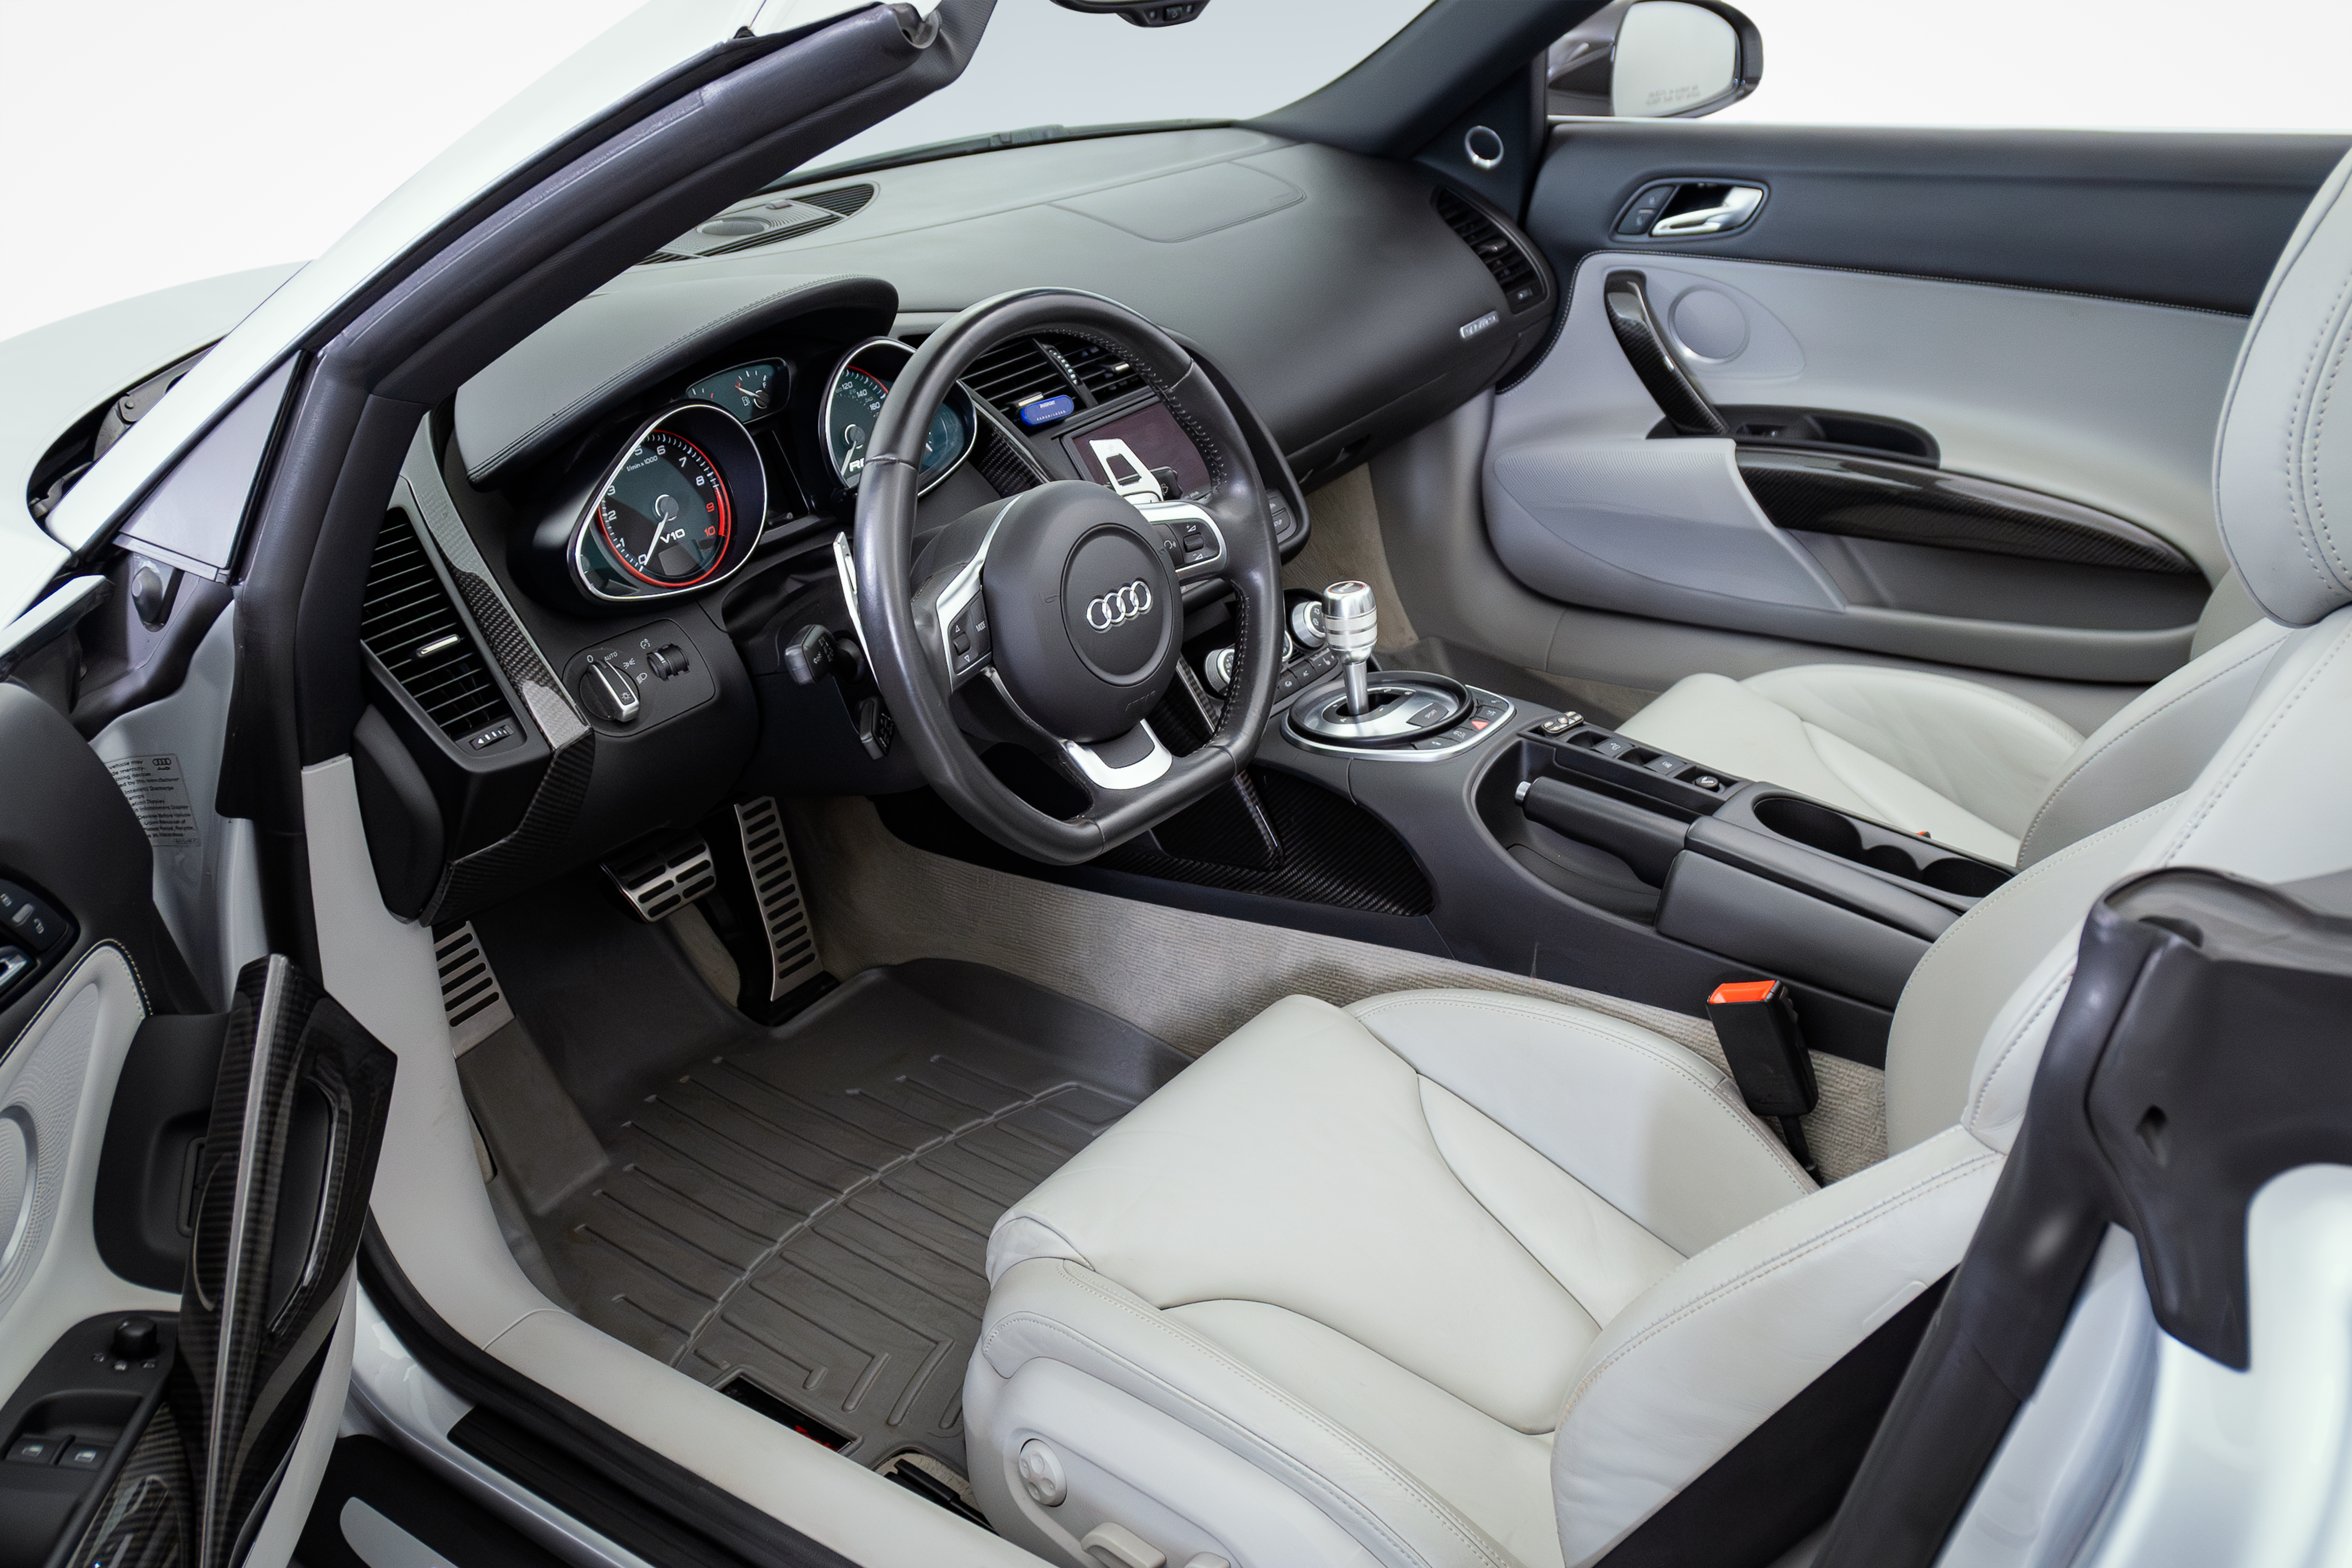 2011 Audi R8 Interior